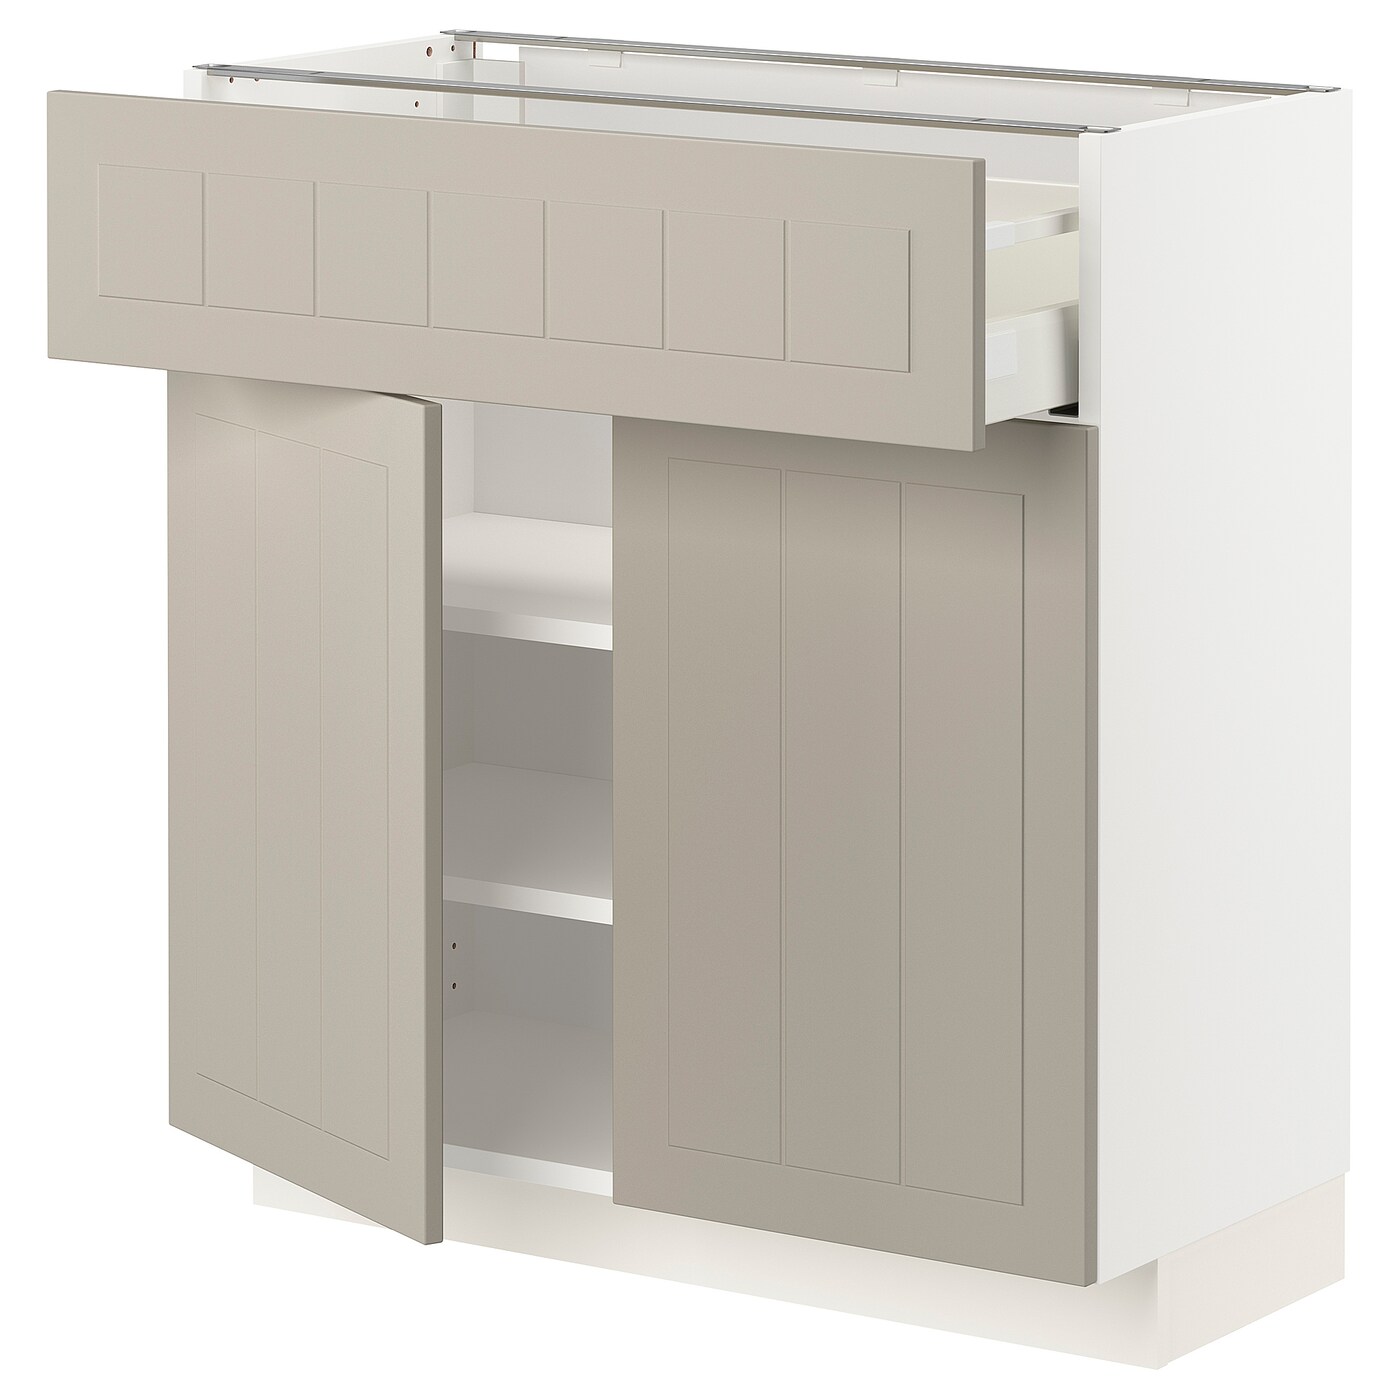 Напольный кухонный шкаф  - IKEA METOD MAXIMERA, 80x37x80см, белый/темно-бежевый, МЕТОД МАКСИМЕРА ИКЕА